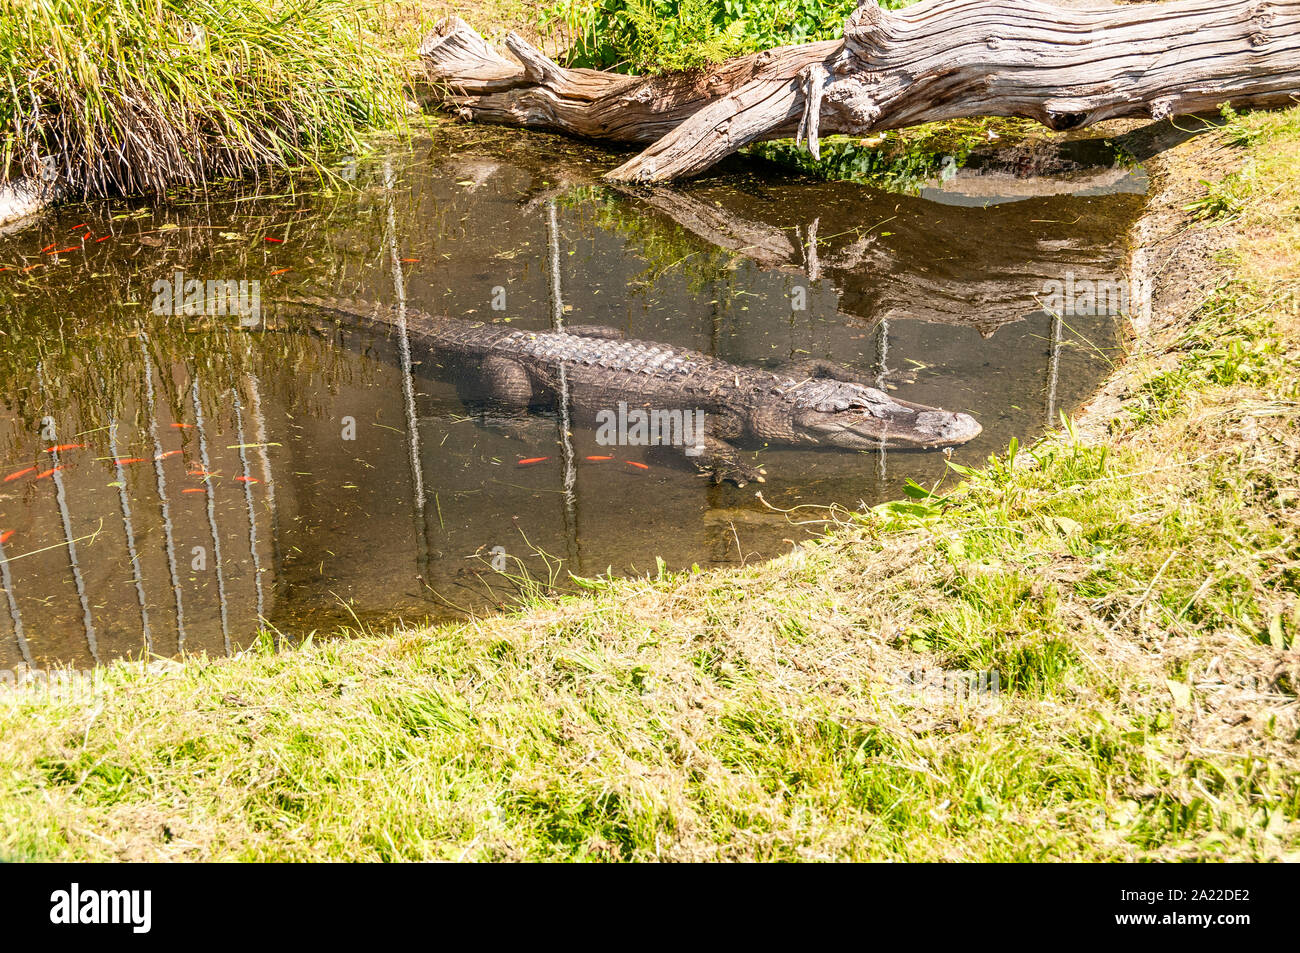 Un alligatore poggia sul suo lato inferiore, arti sparsi, in corrispondenza del bordo poco profonda di un naturale cercando piscina, metà fuori dall'acqua, assorbendo la luce del sole Foto Stock